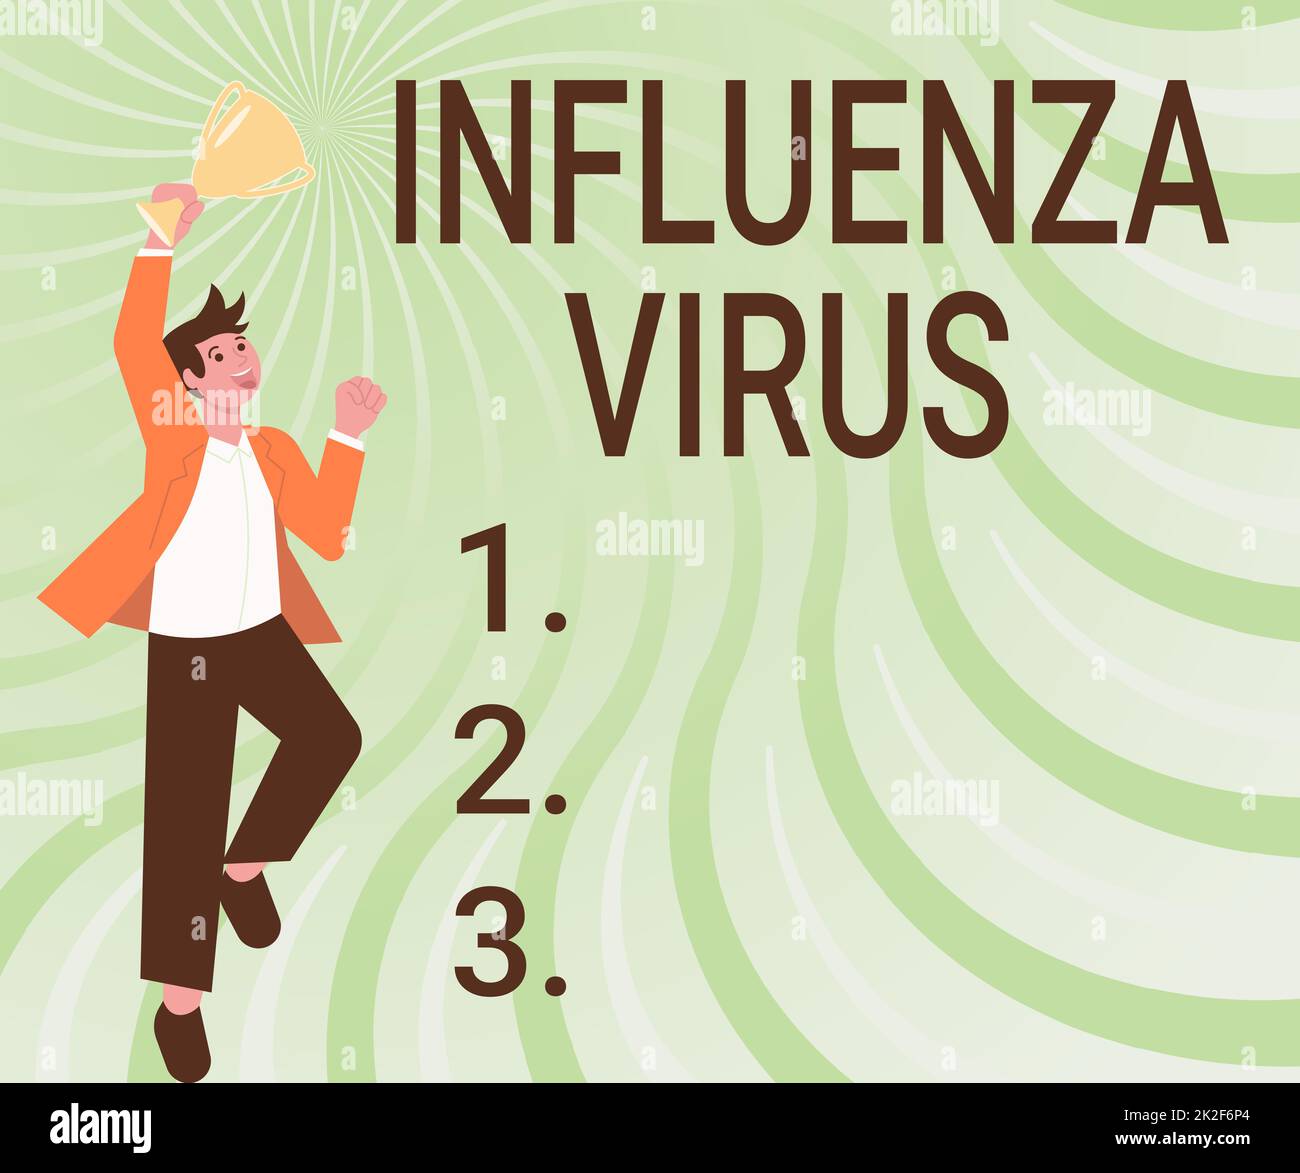 Handschriftlicher Text Influenza Virus. Geschäftskonzept eine Infektionskrankheit, die durch ein Grippevirus verursacht wird Gentleman Jumping aufregend Trophäe halten Errungenschaften zeigen. Stockfoto